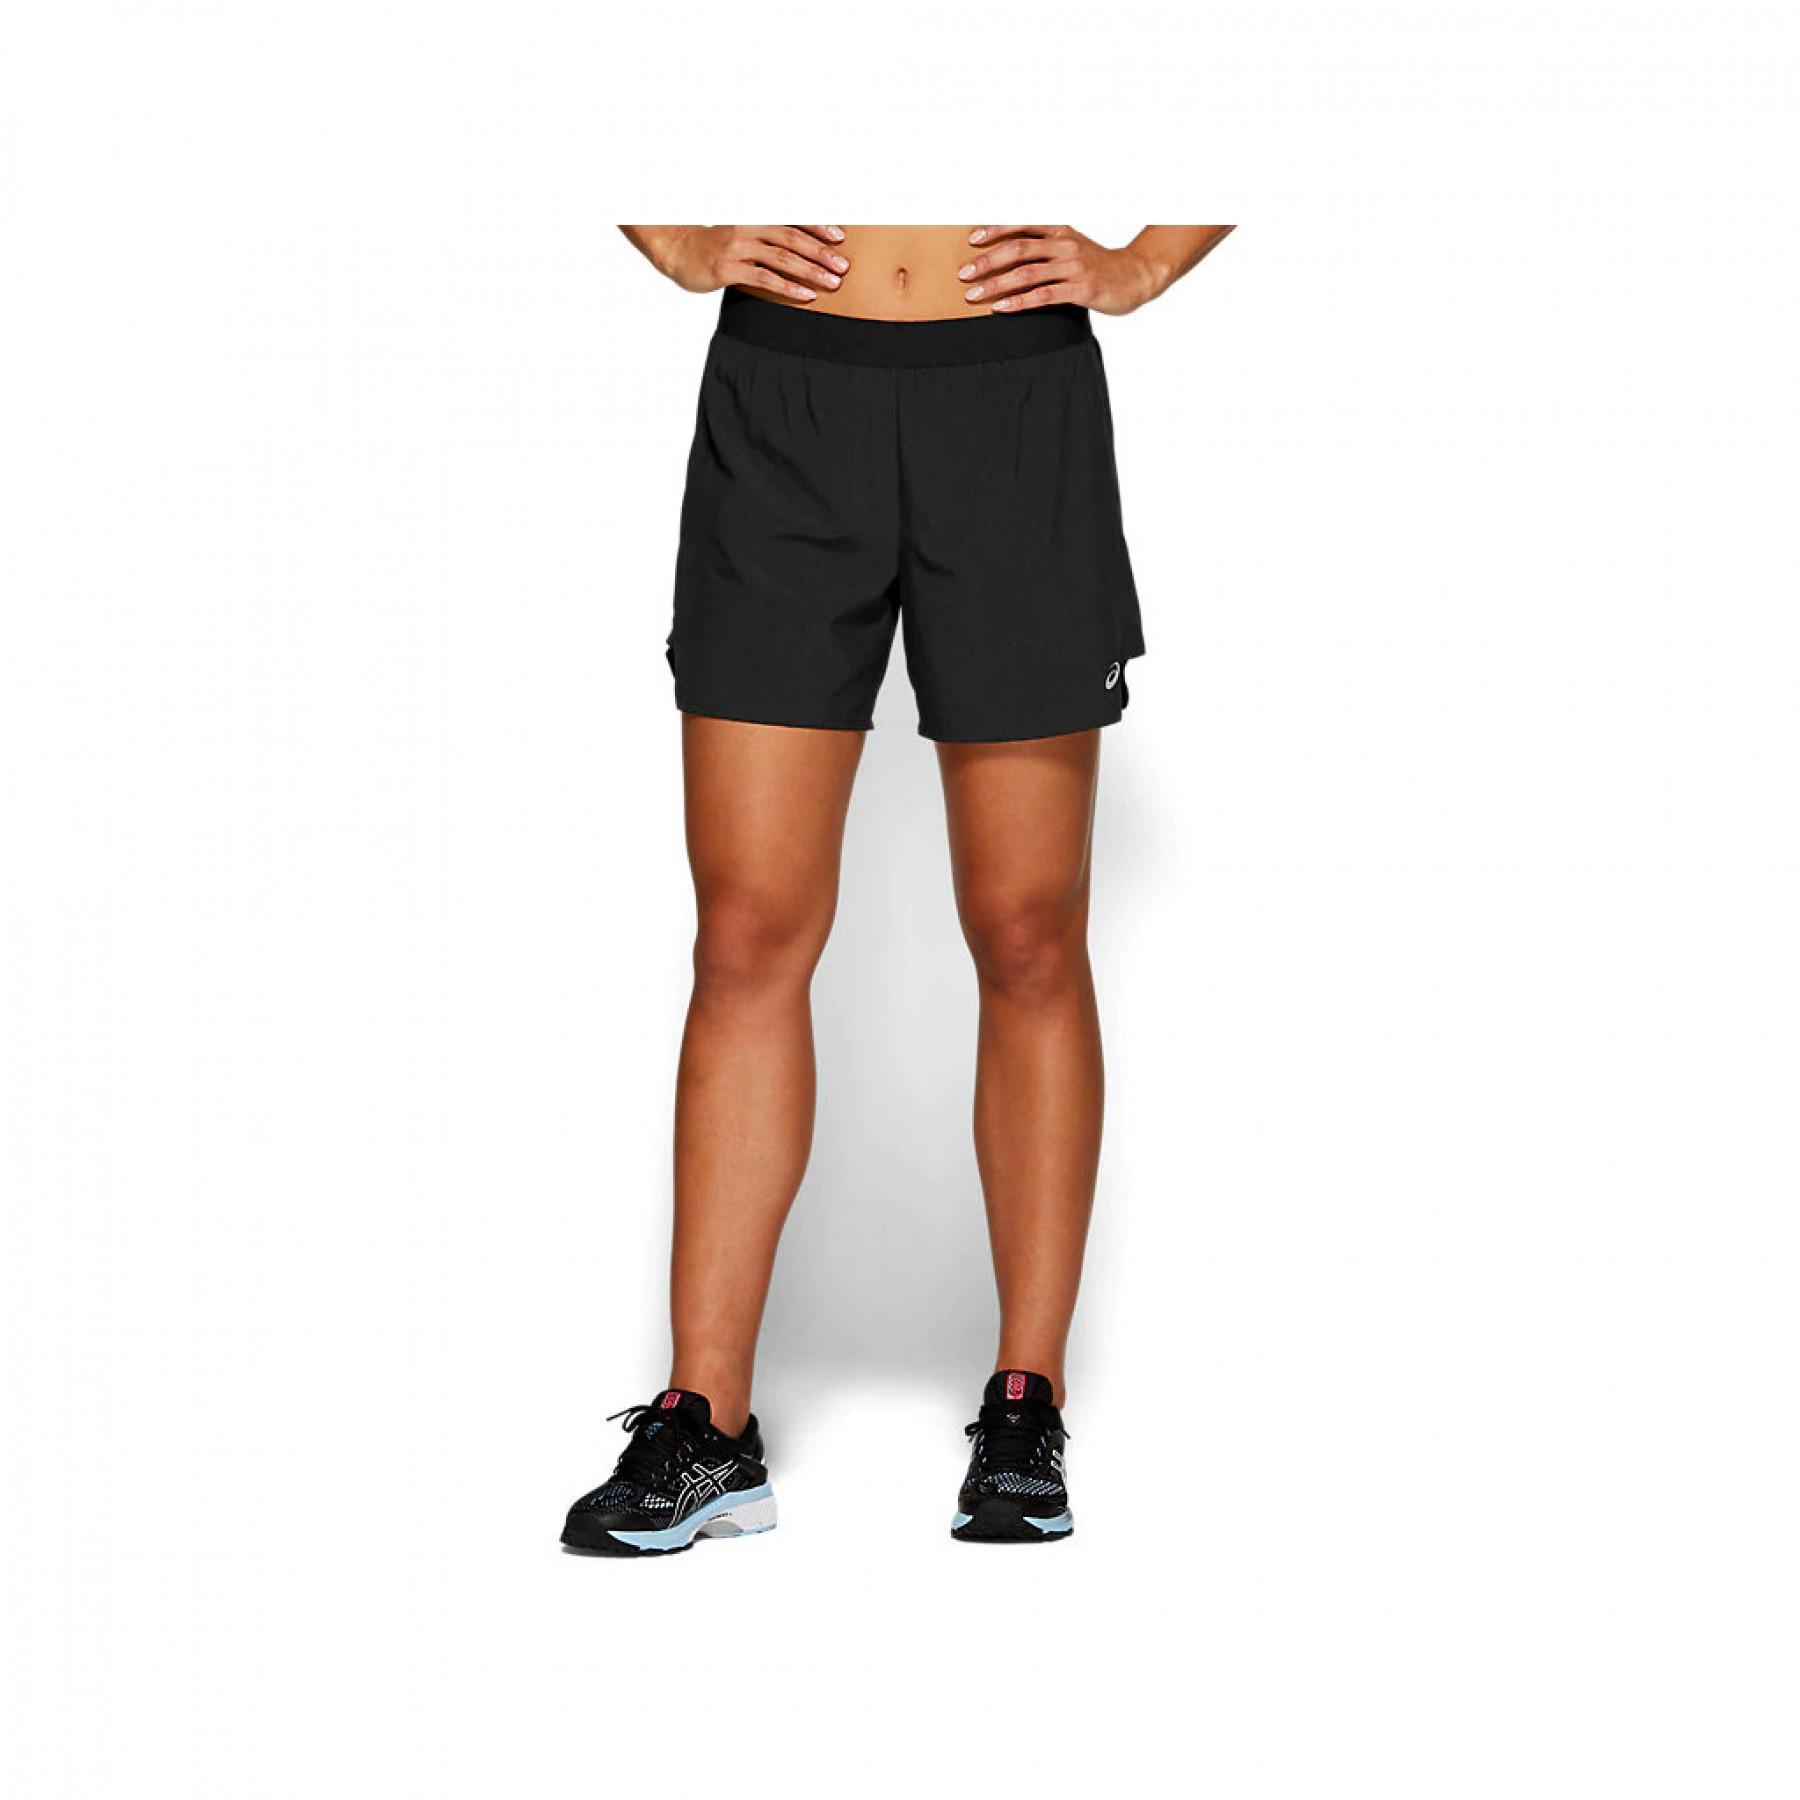 Damen-Shorts Asics 2 N 1 5.5in